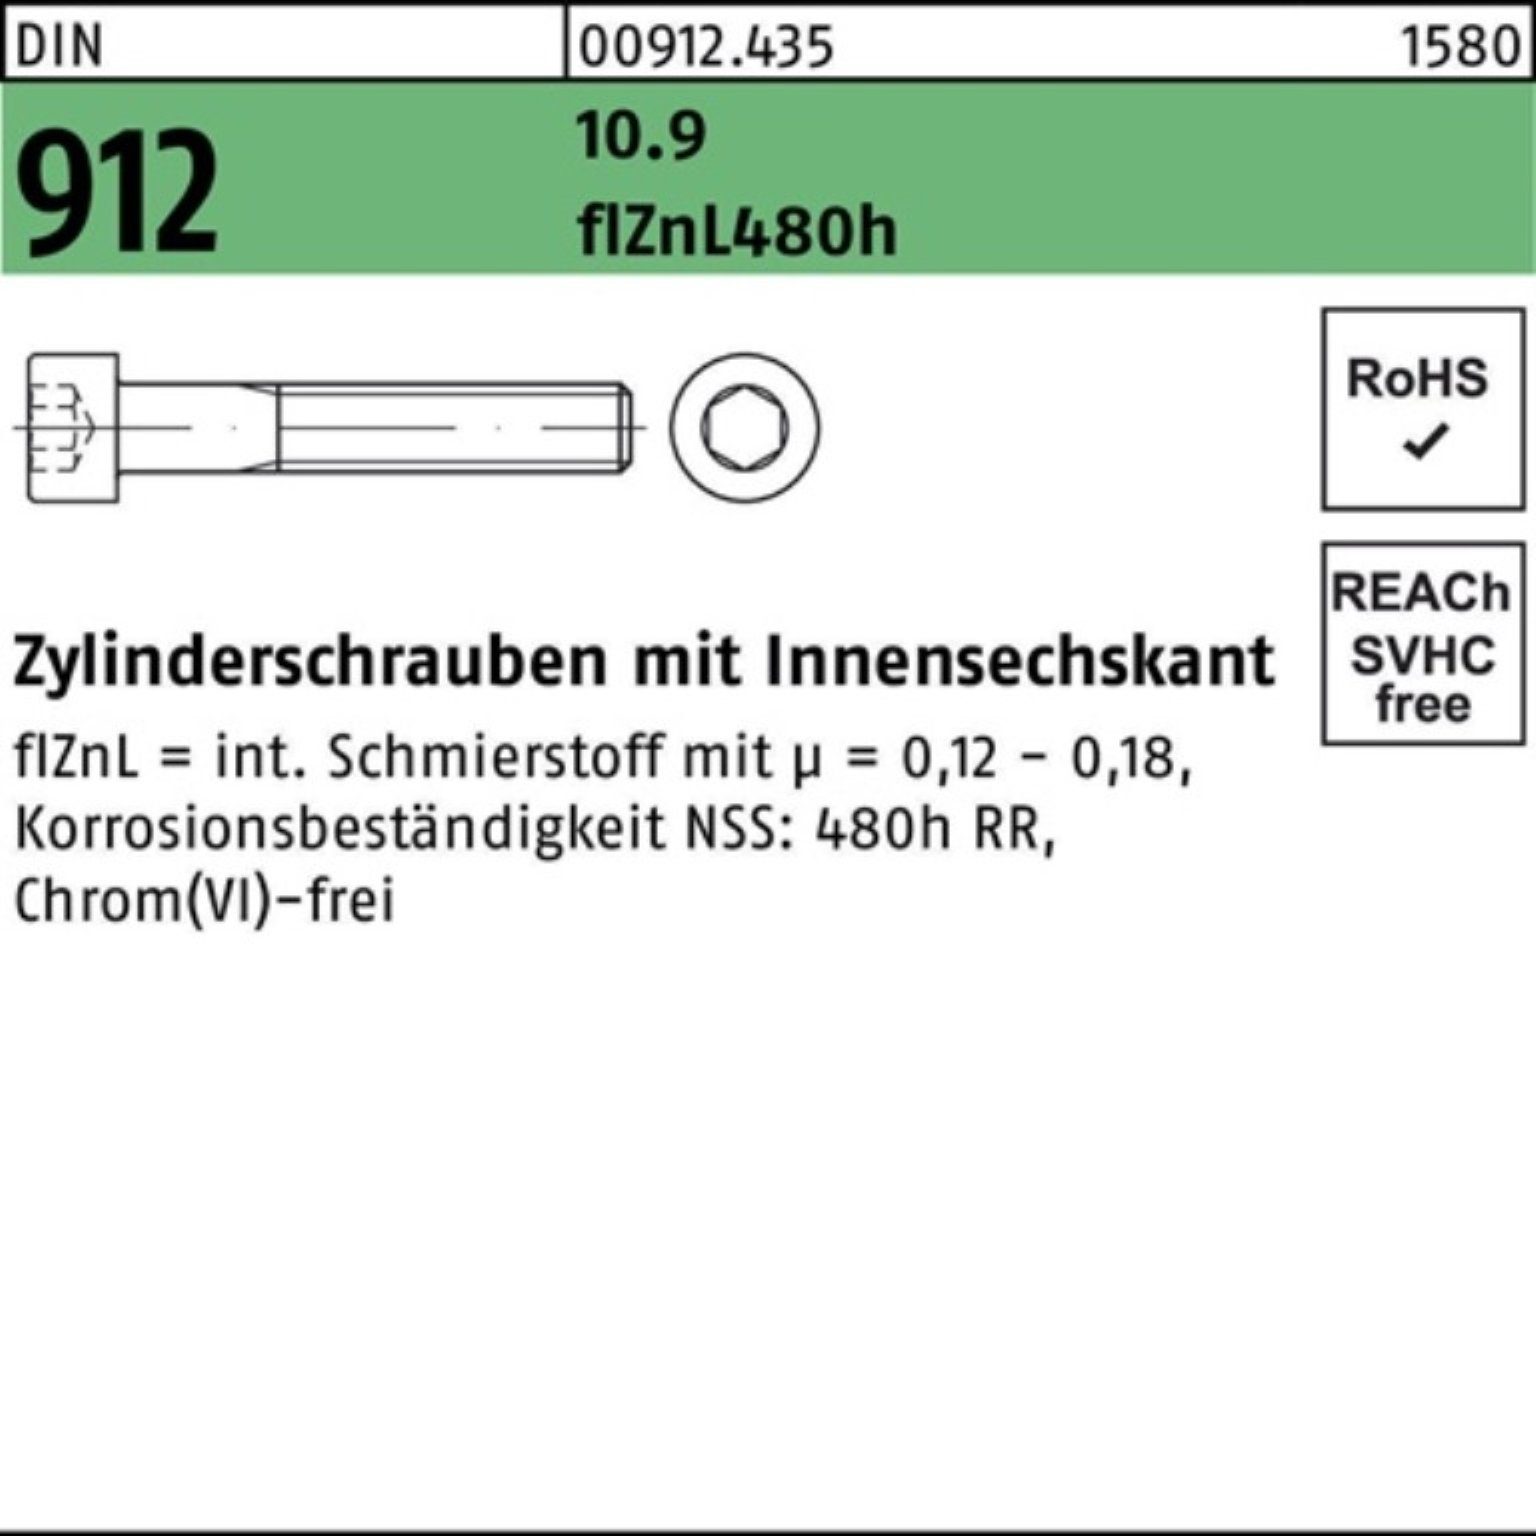 Reyher Zylinderschraube 100er Pack Zylinderschraube DIN 10.9 M20x70 Innen-6kt 912 flZnL/nc/x/x